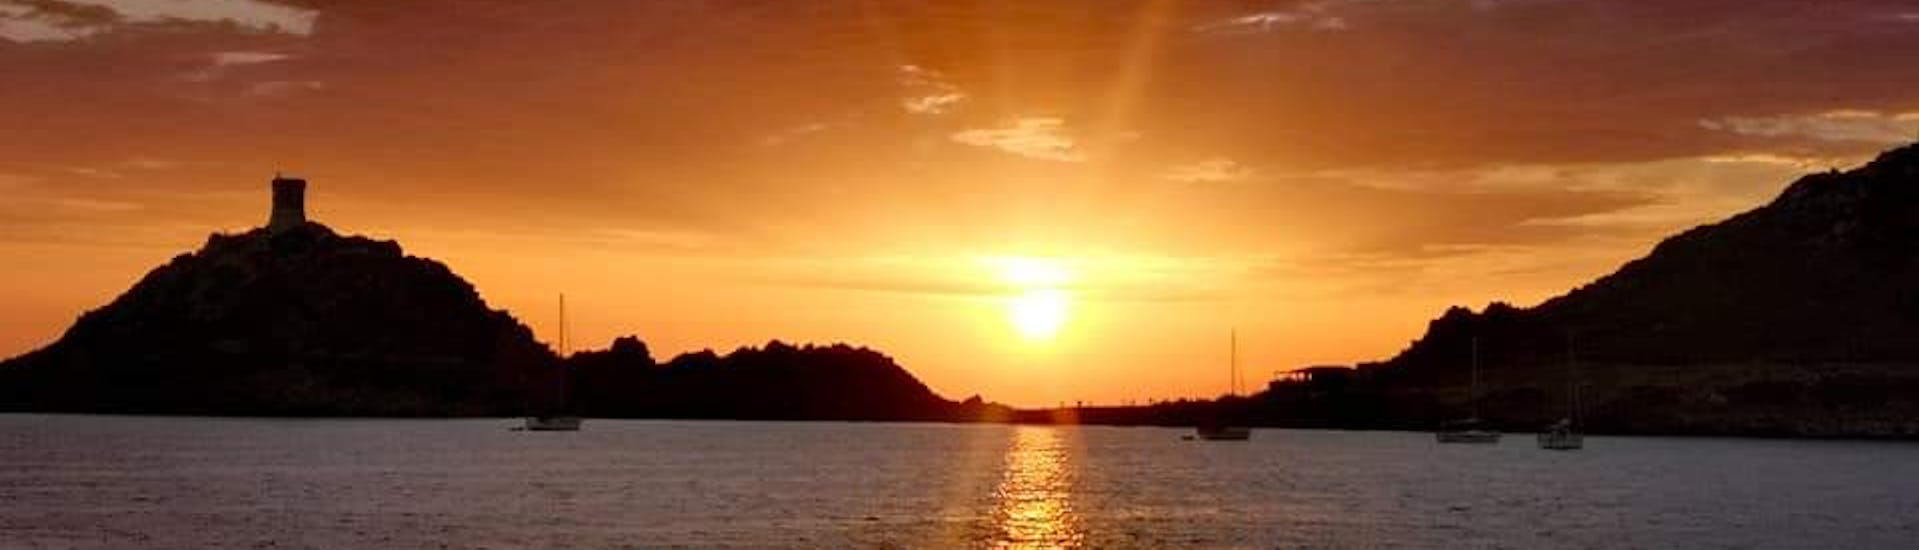 Bootstour von Porticcio - Îles Sanguinaires  & Sonnenuntergang.